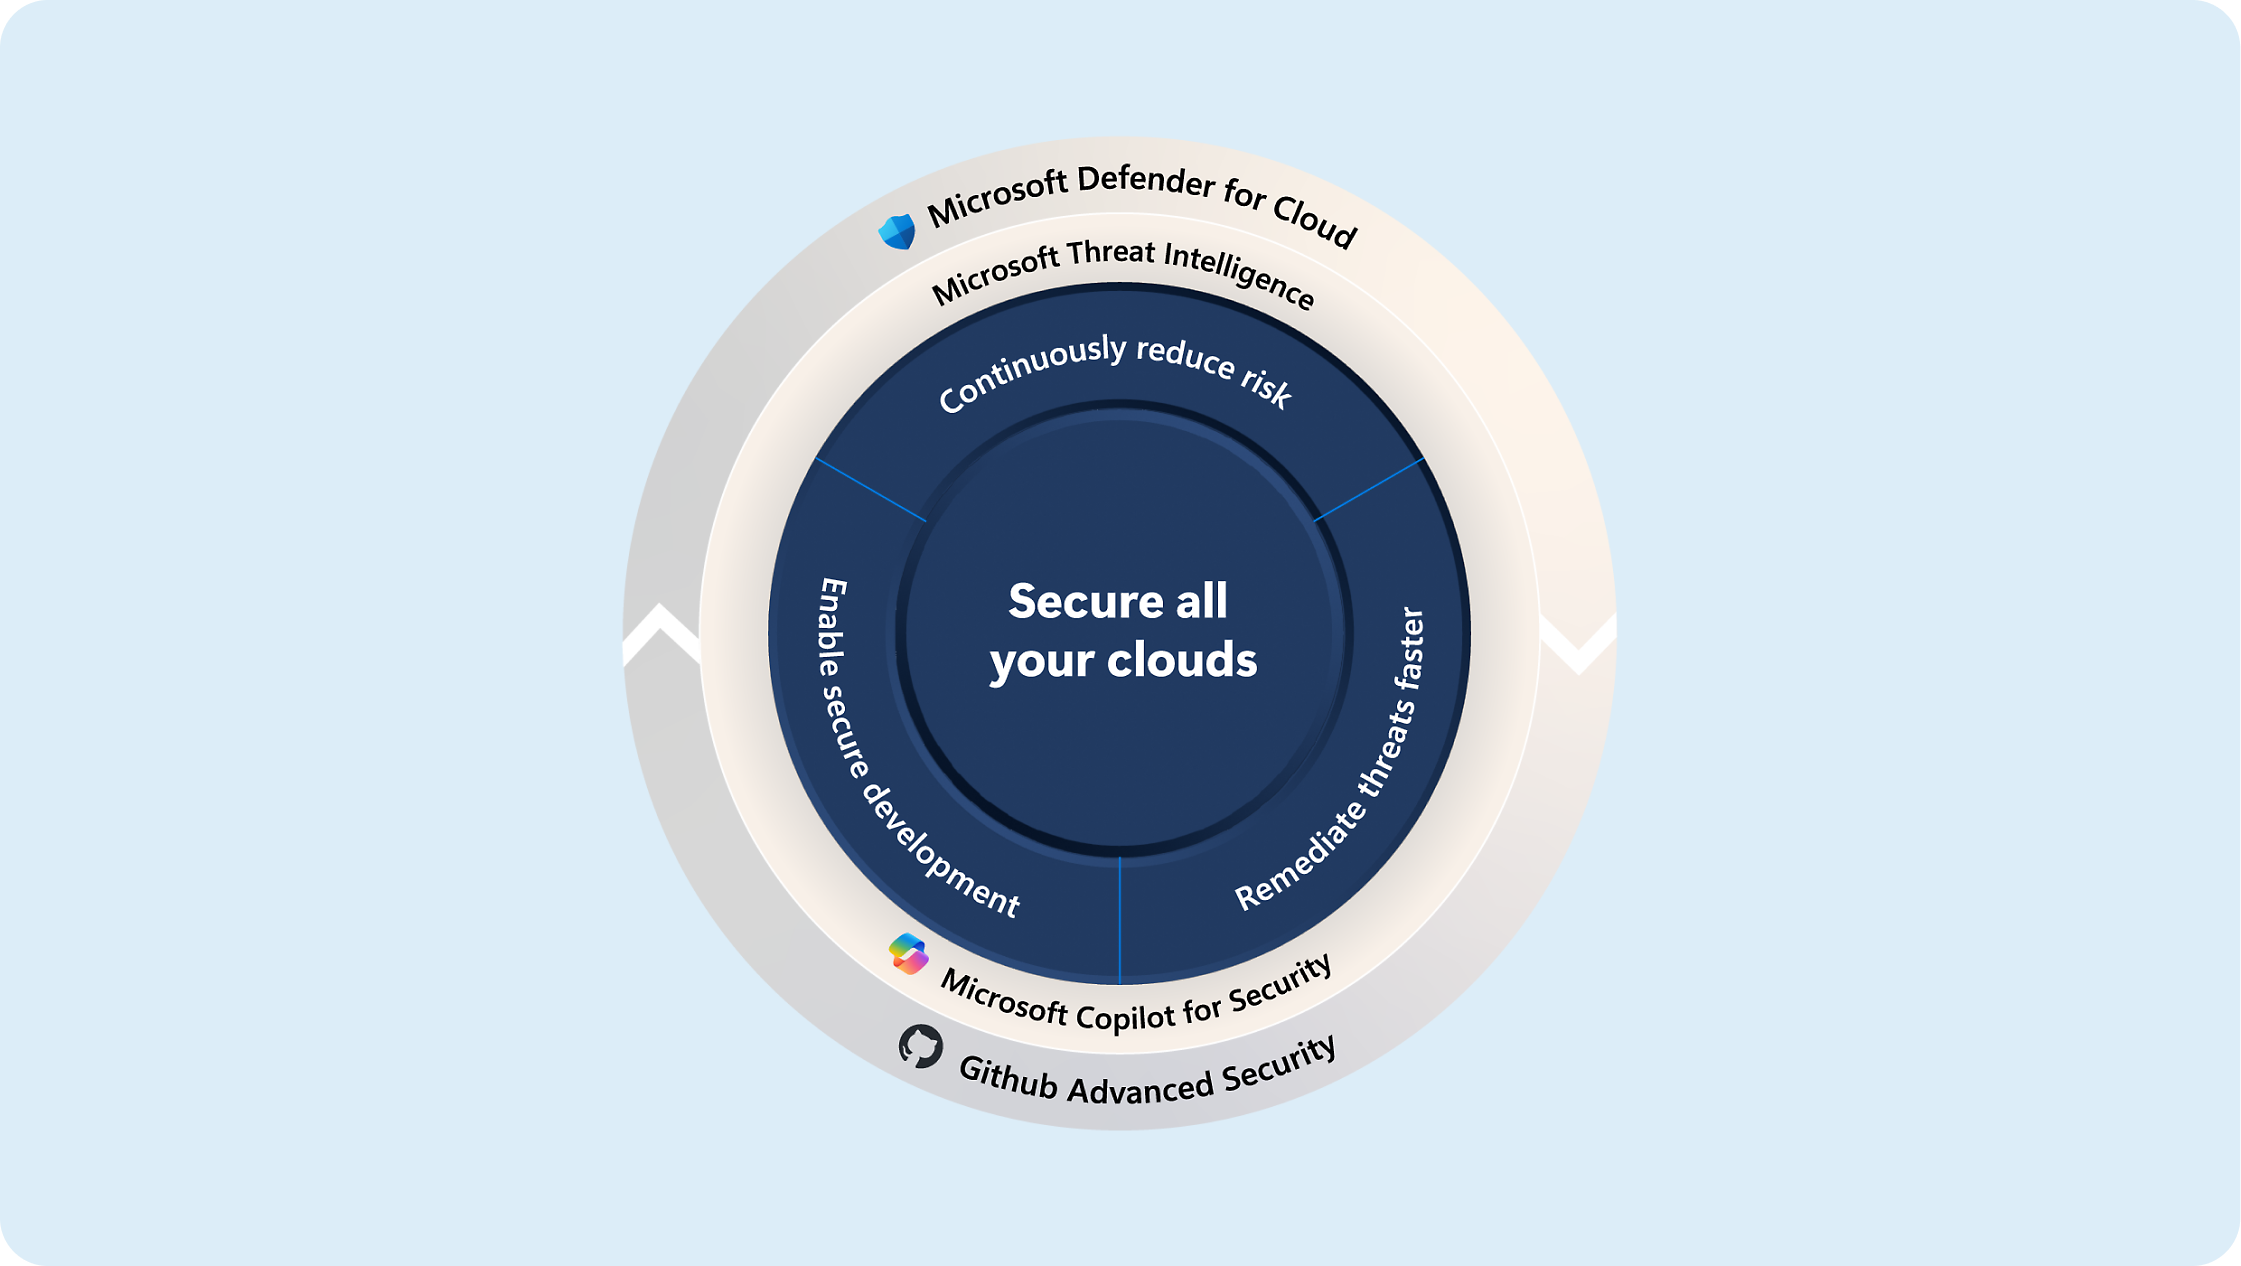 Diagram znázorňující strategie zabezpečení cloudů pomocí technologií Microsoft Defender, analýzy hrozeb, copilot pro security